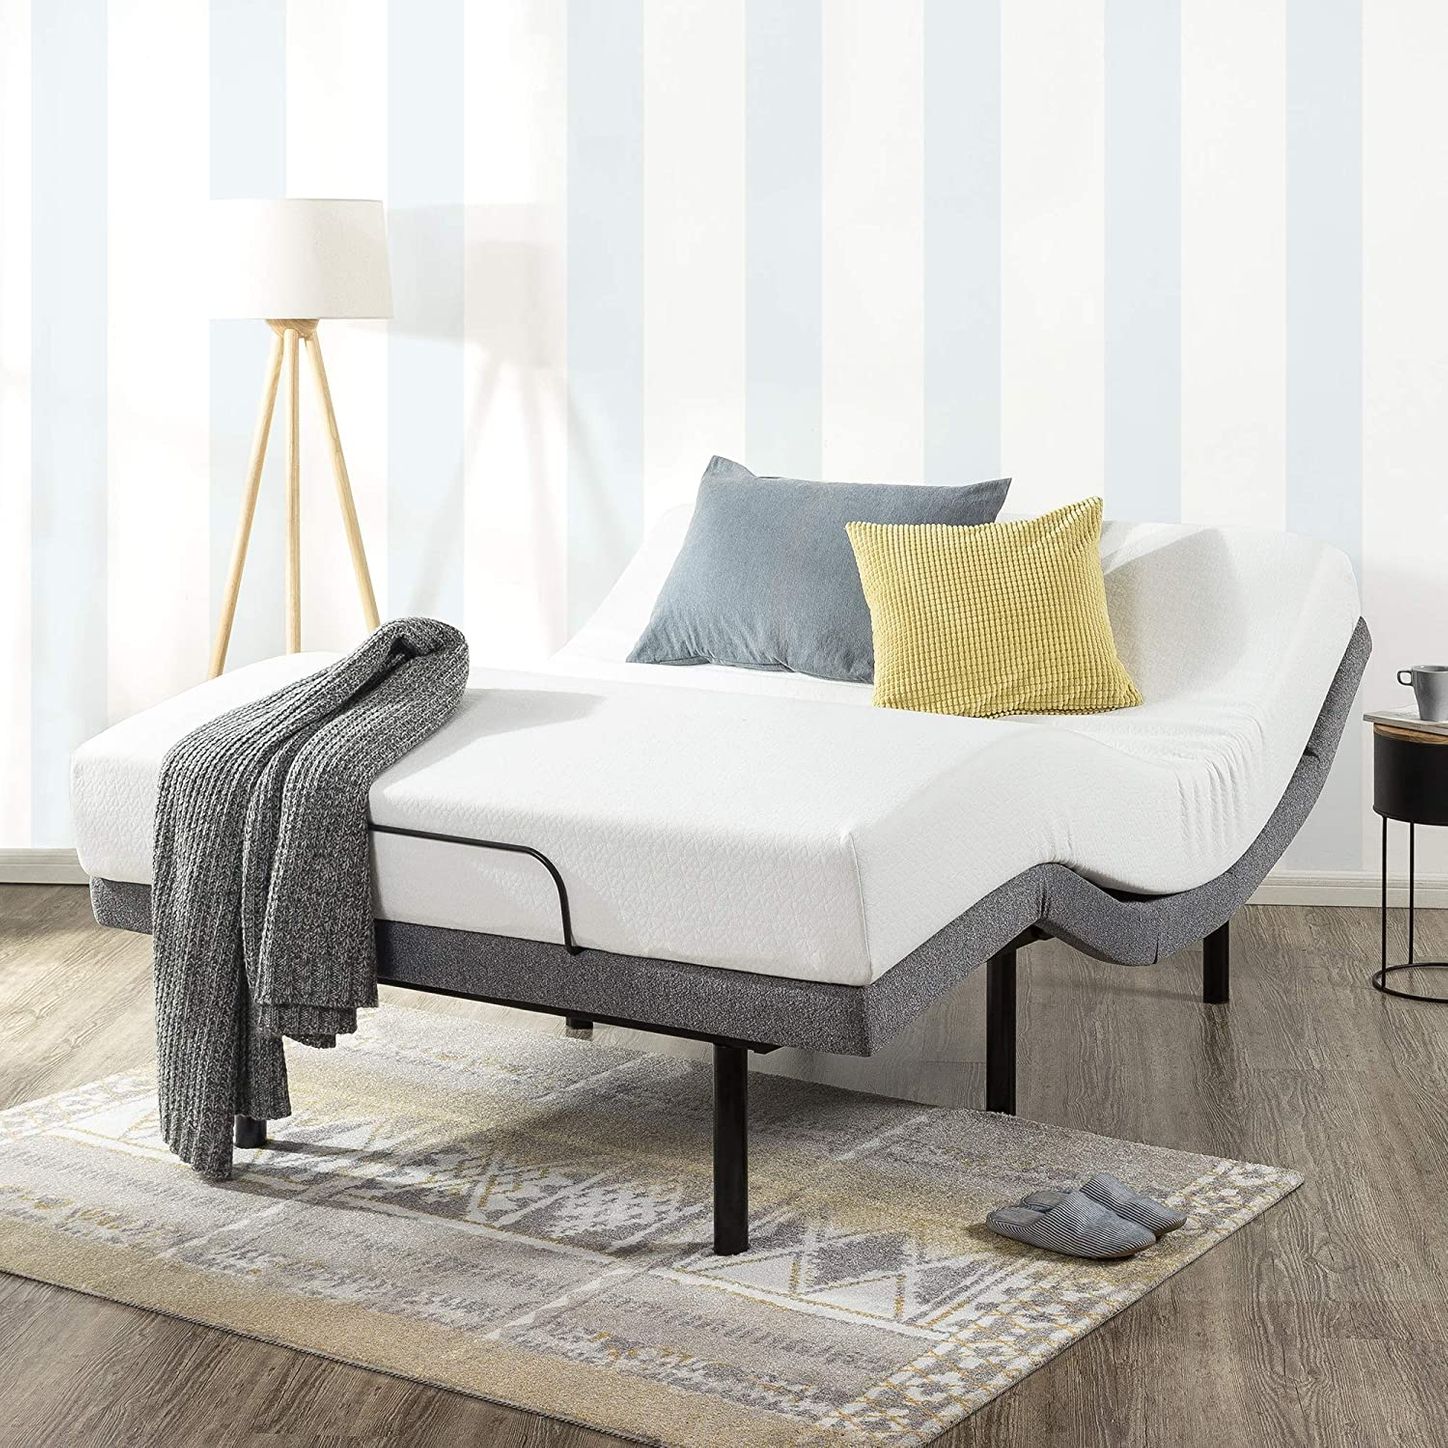 10 Best Adjustable Bed Bases 2021 The, Best King Size Adjustable Bed Base